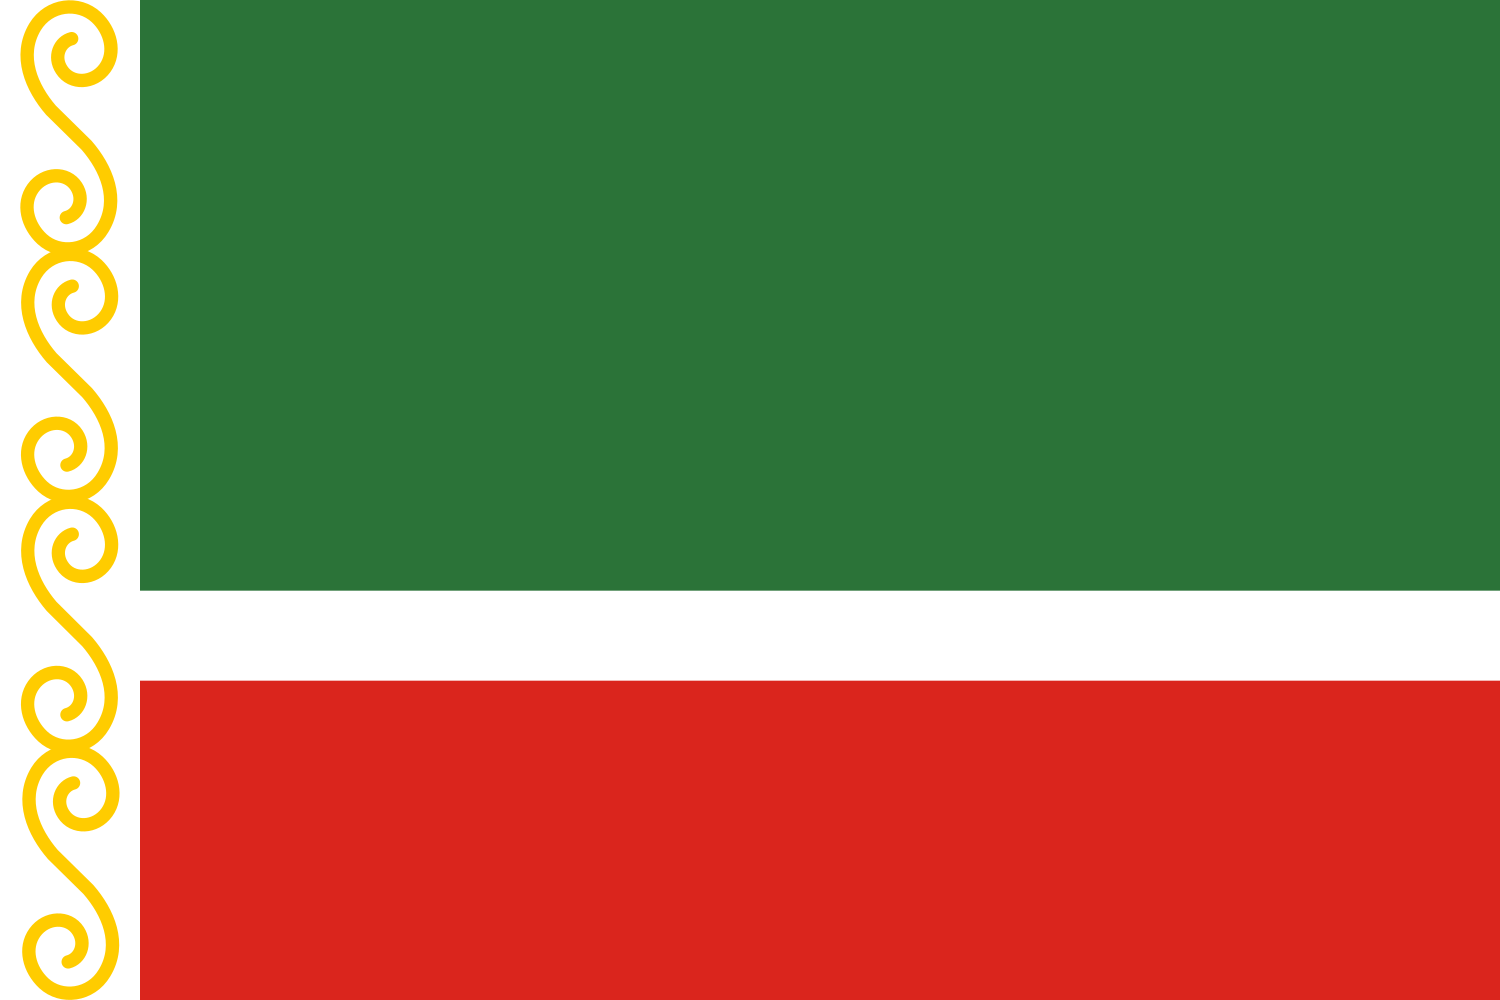 Bandeiras das subdivisões da Rússia – Wikipédia, a enciclopédia livre